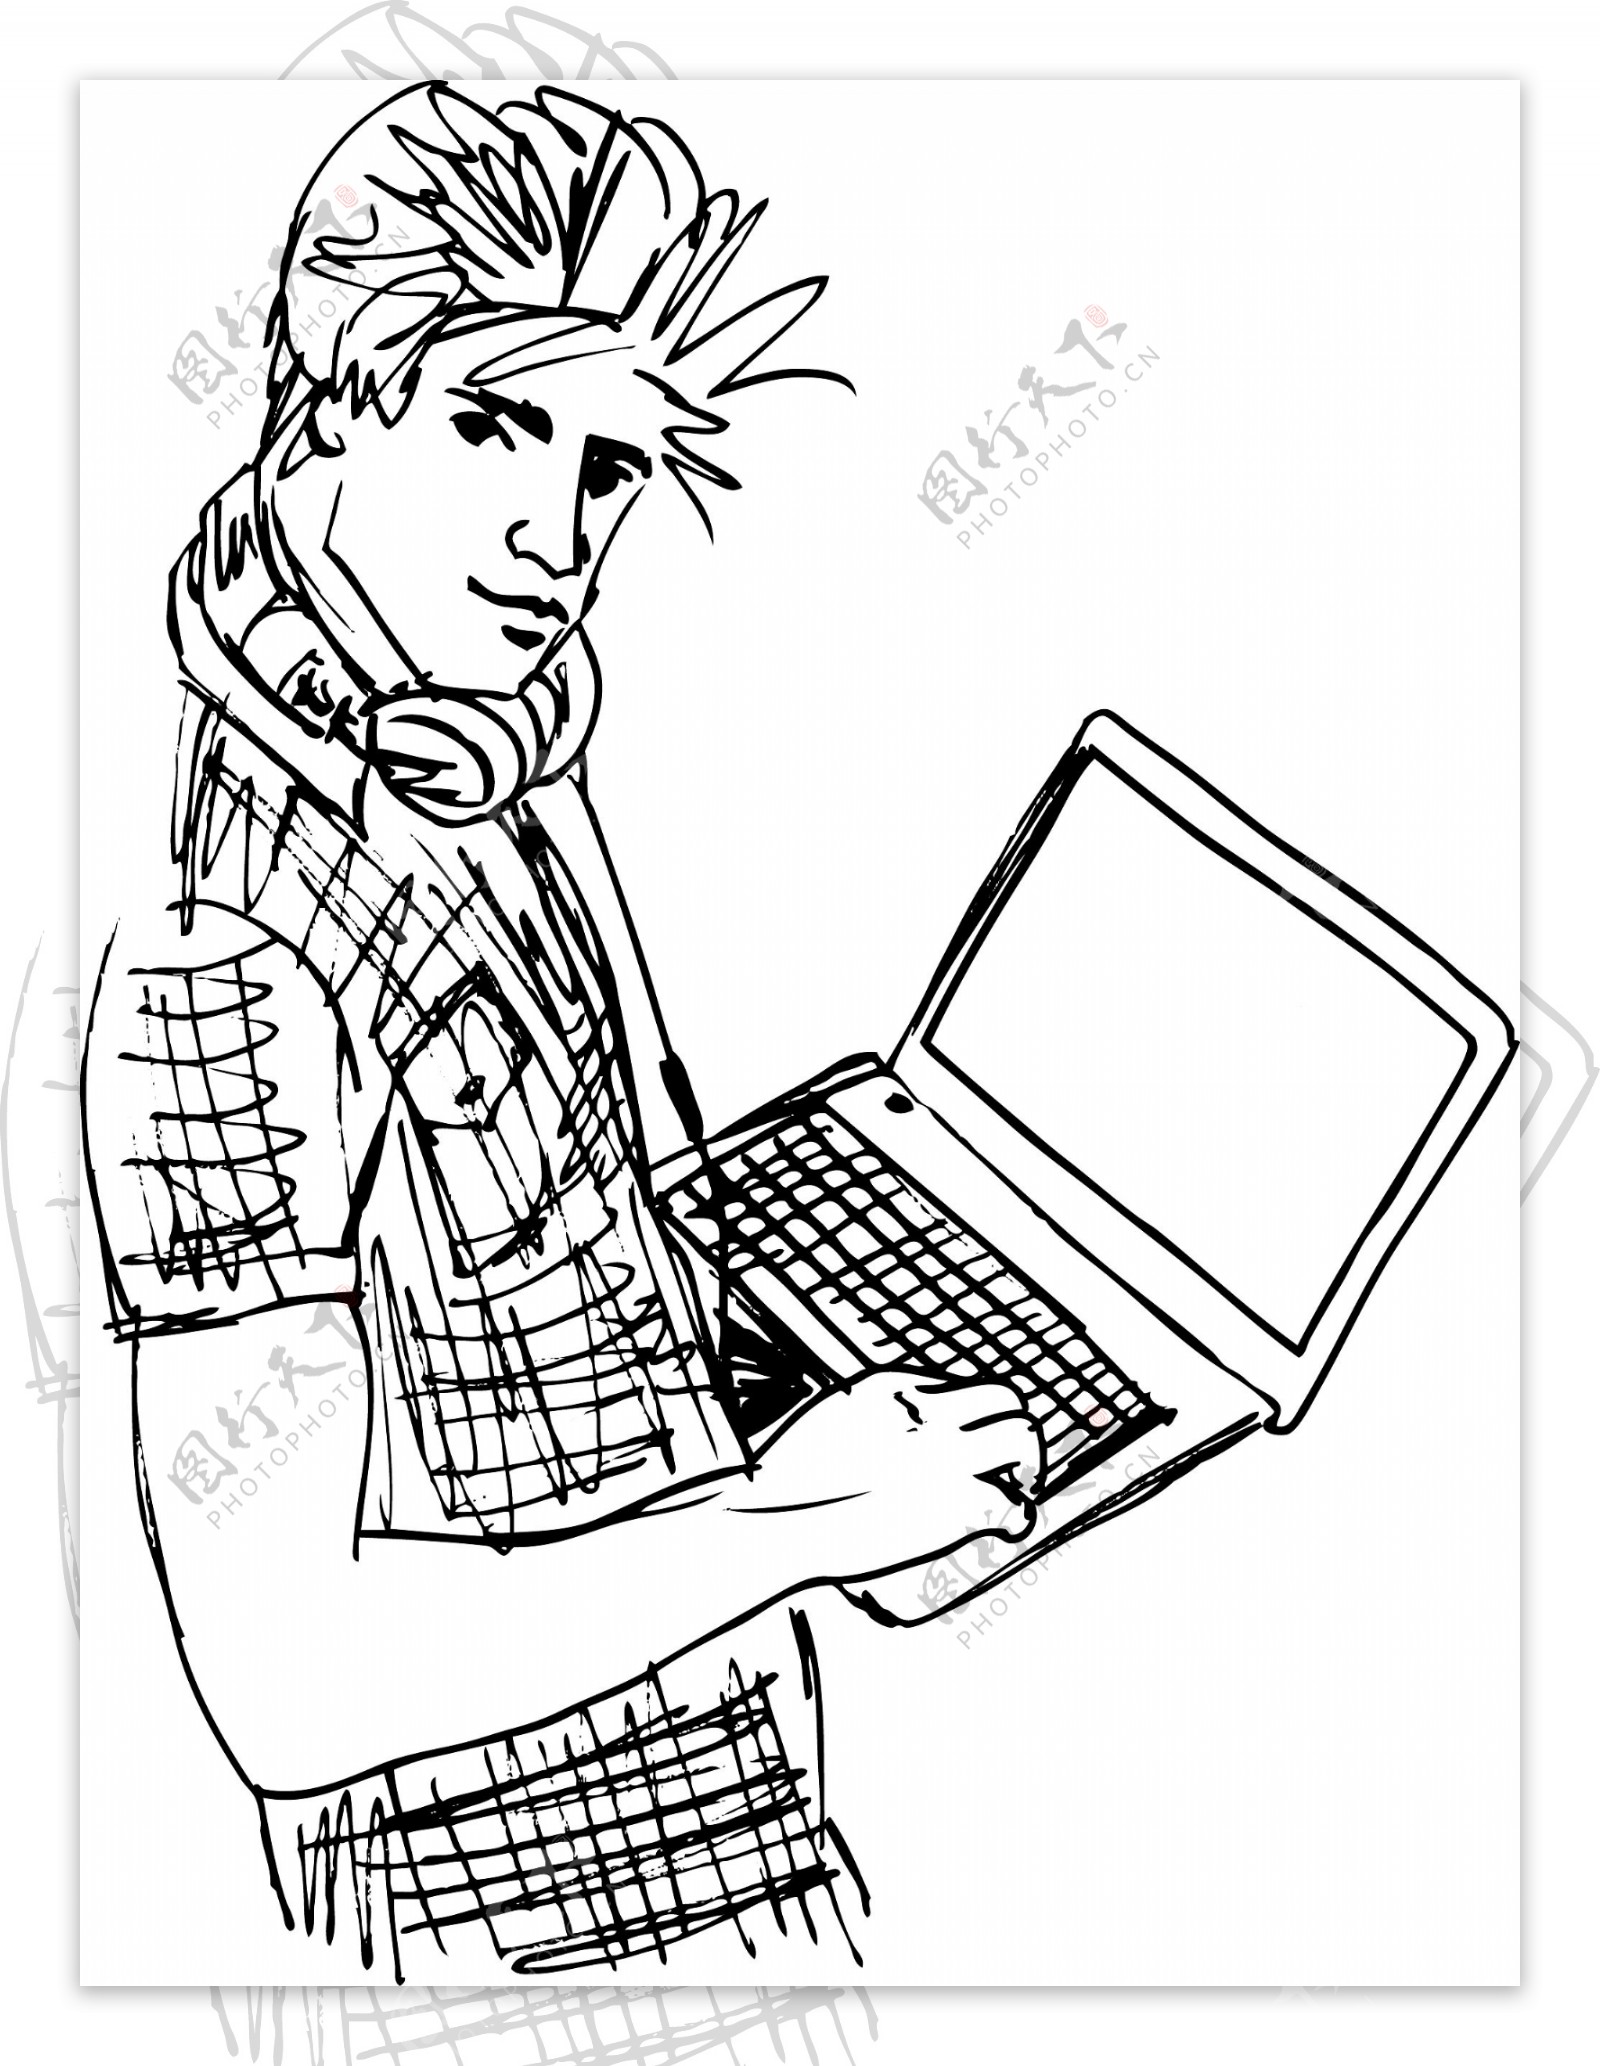 用笔记本电脑插画矢量的年轻人示意图